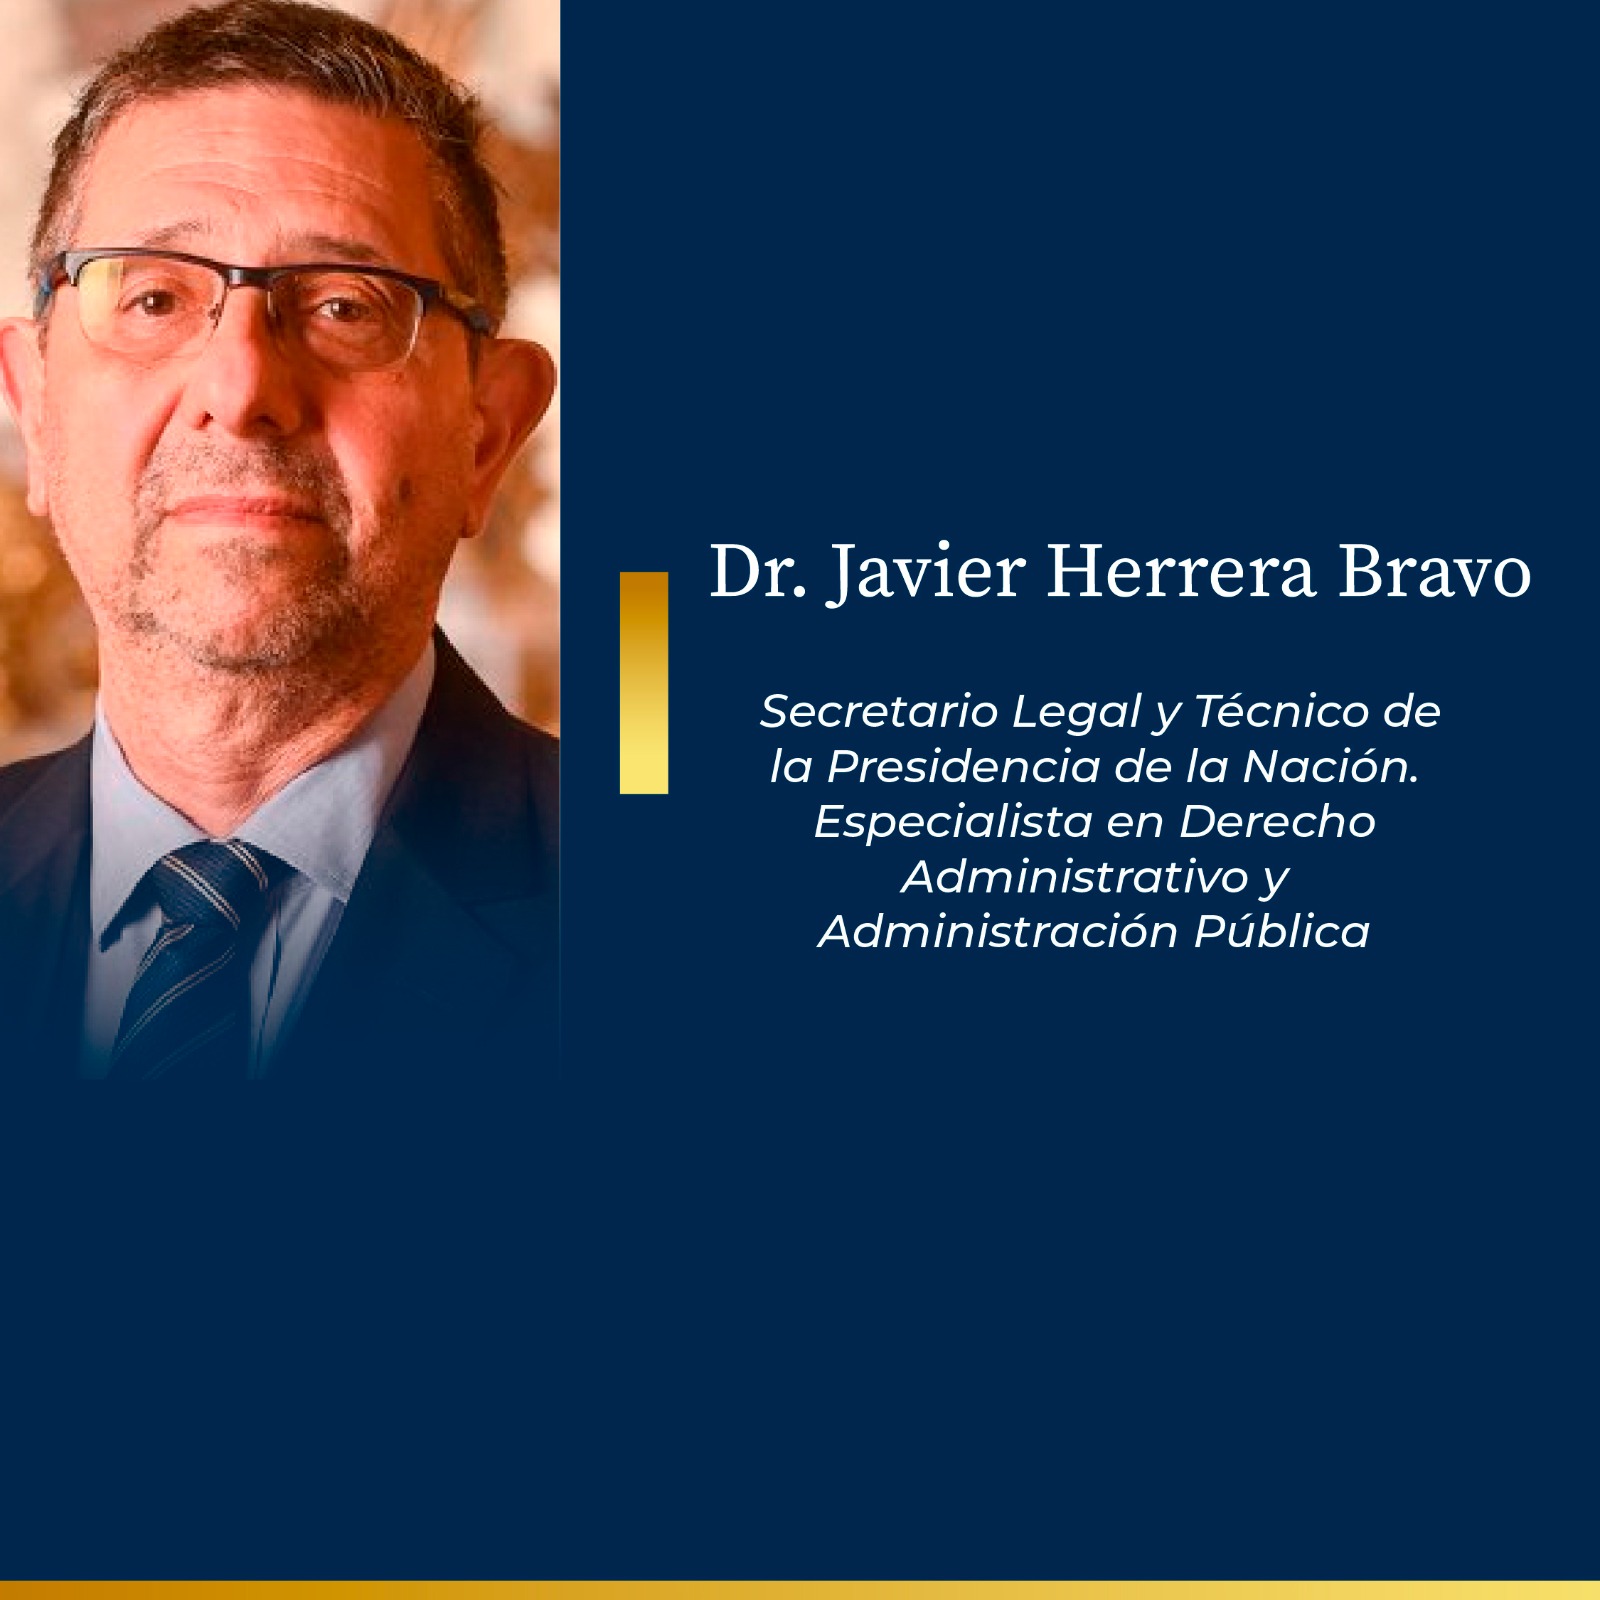 Dr. Javier Herrera Bravo